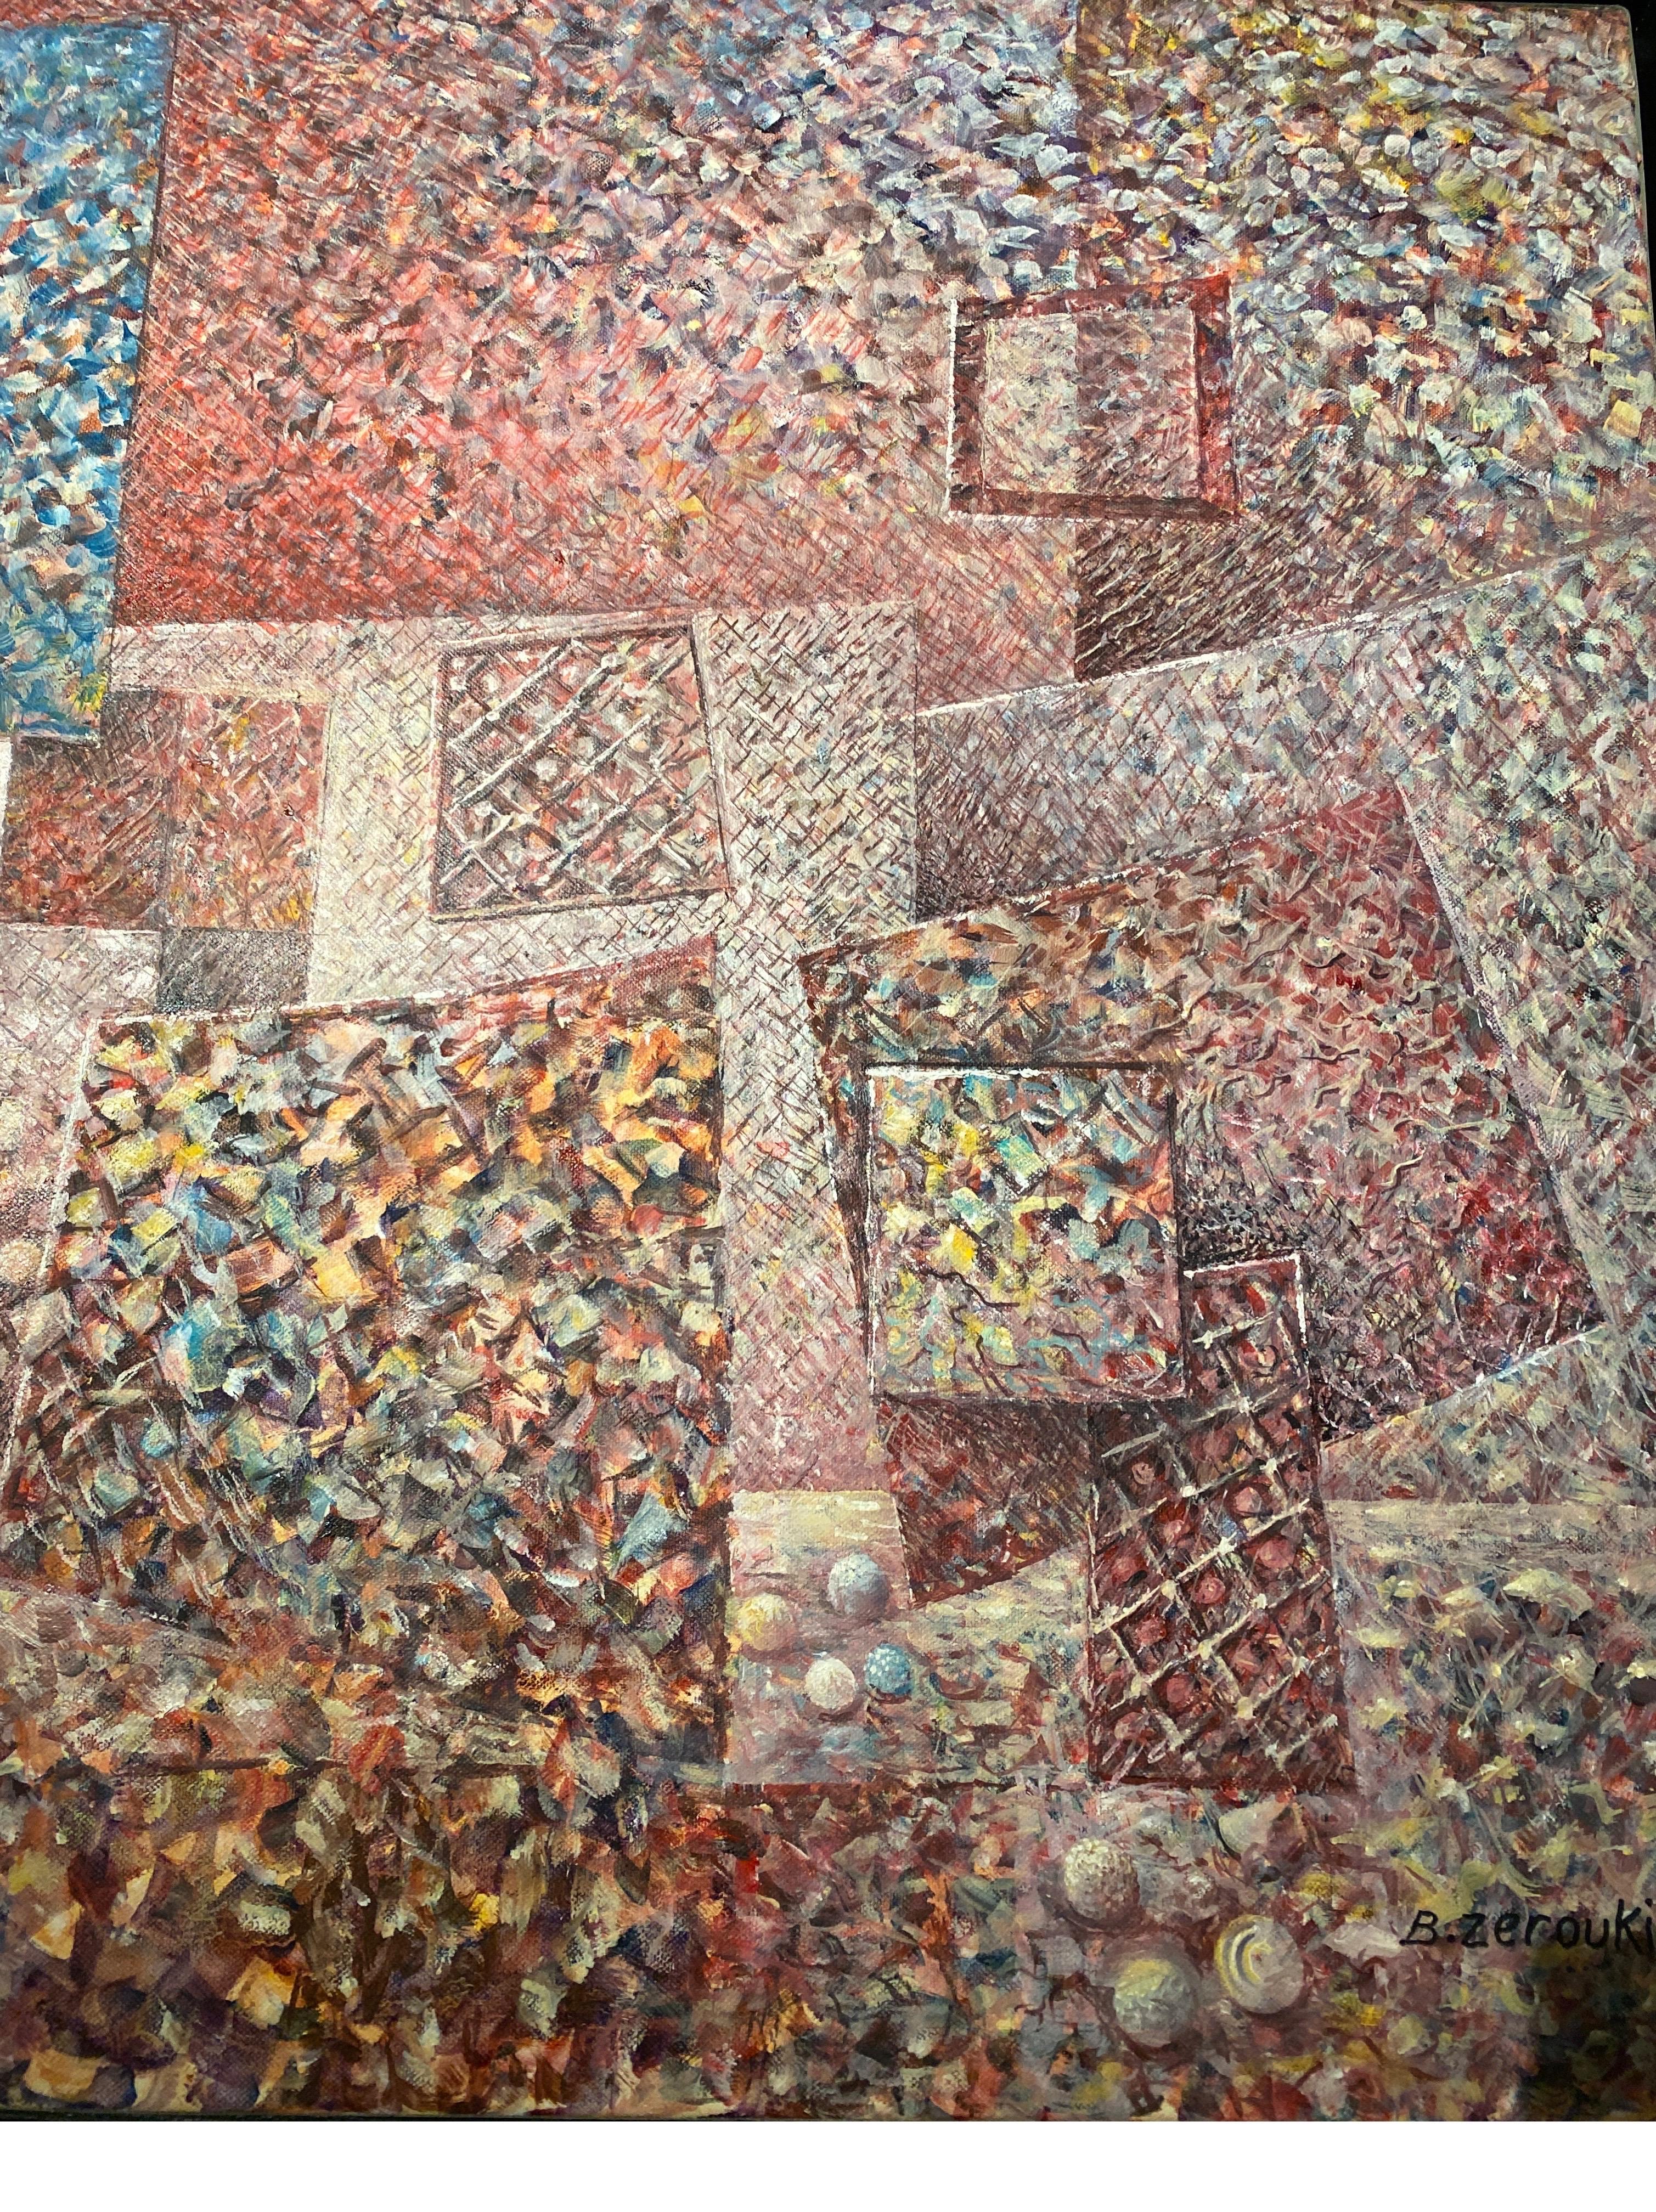 artist who paints squares